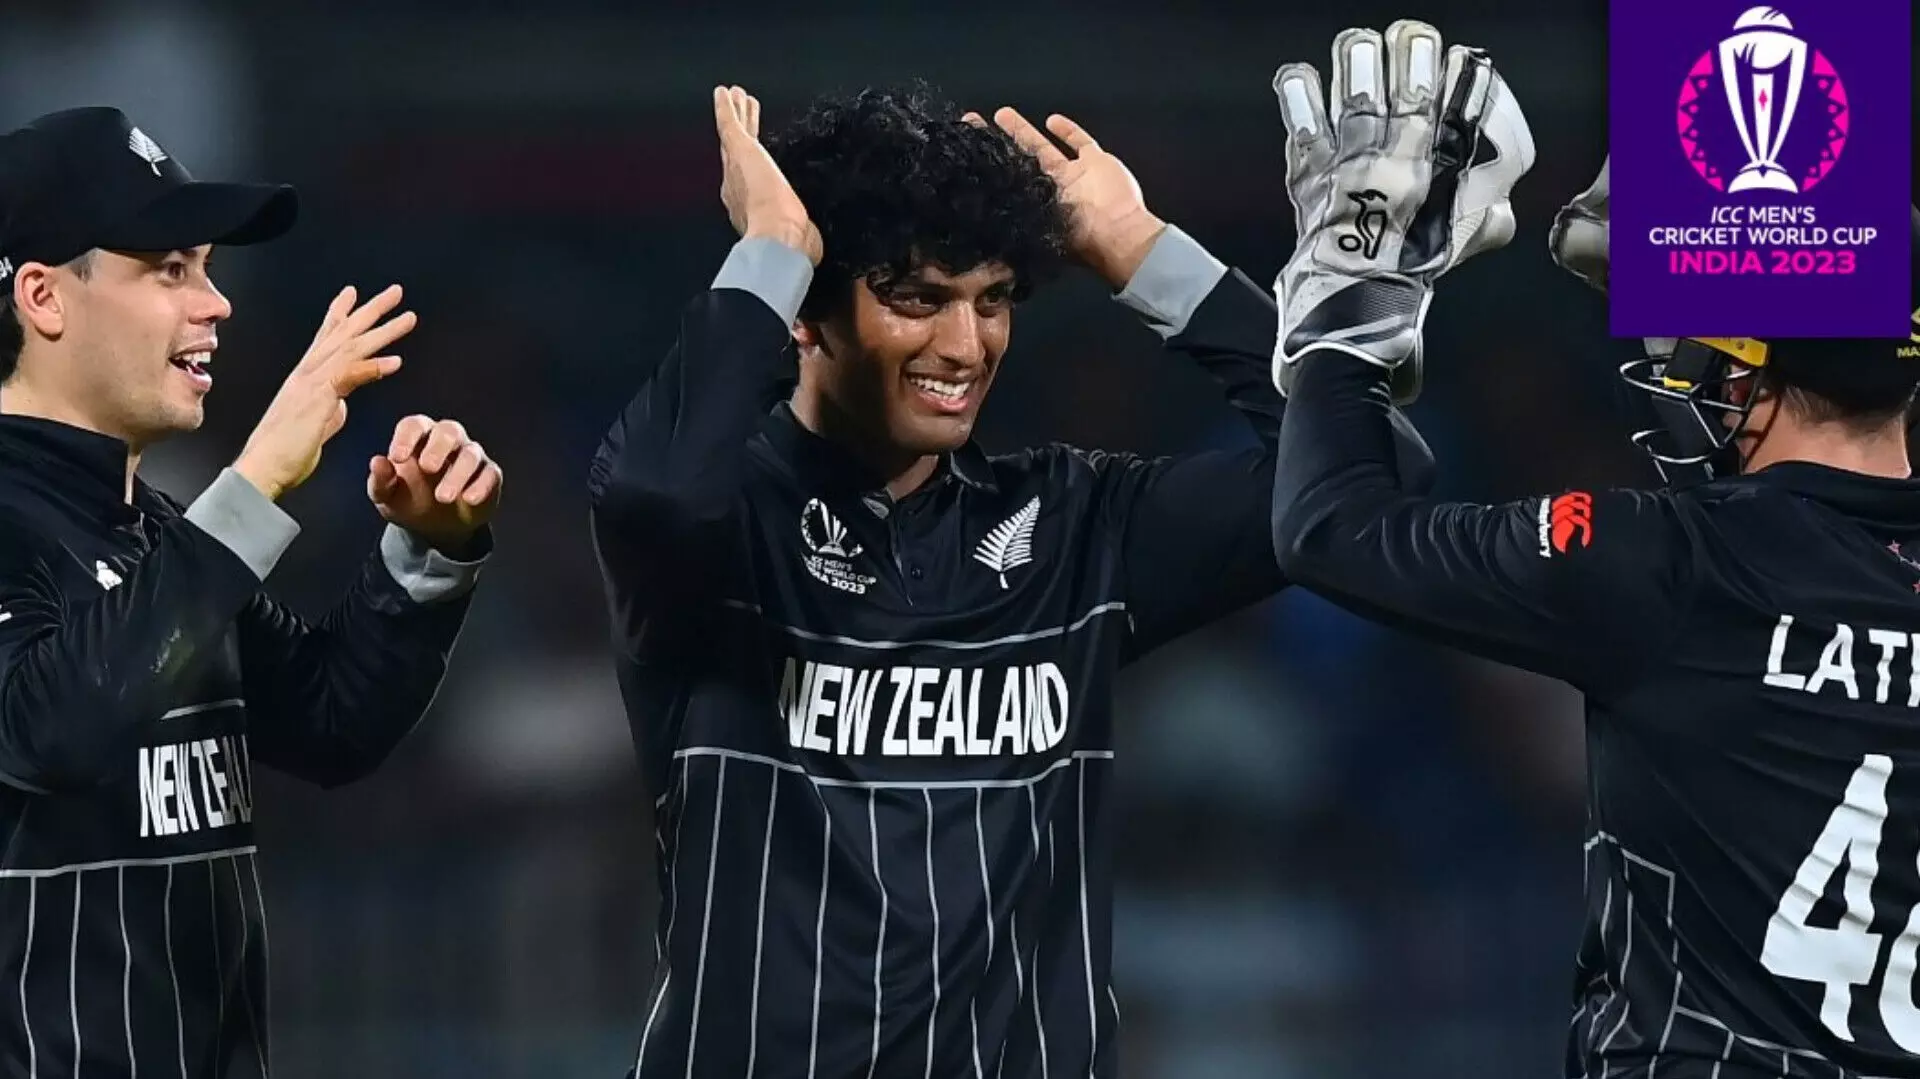 World Cup 2023 NZ vs AFG Highlights: न्यूज़ीलैंड ने जीता चौथा मैच, अफगानिस्तान को 149 रन से हराया